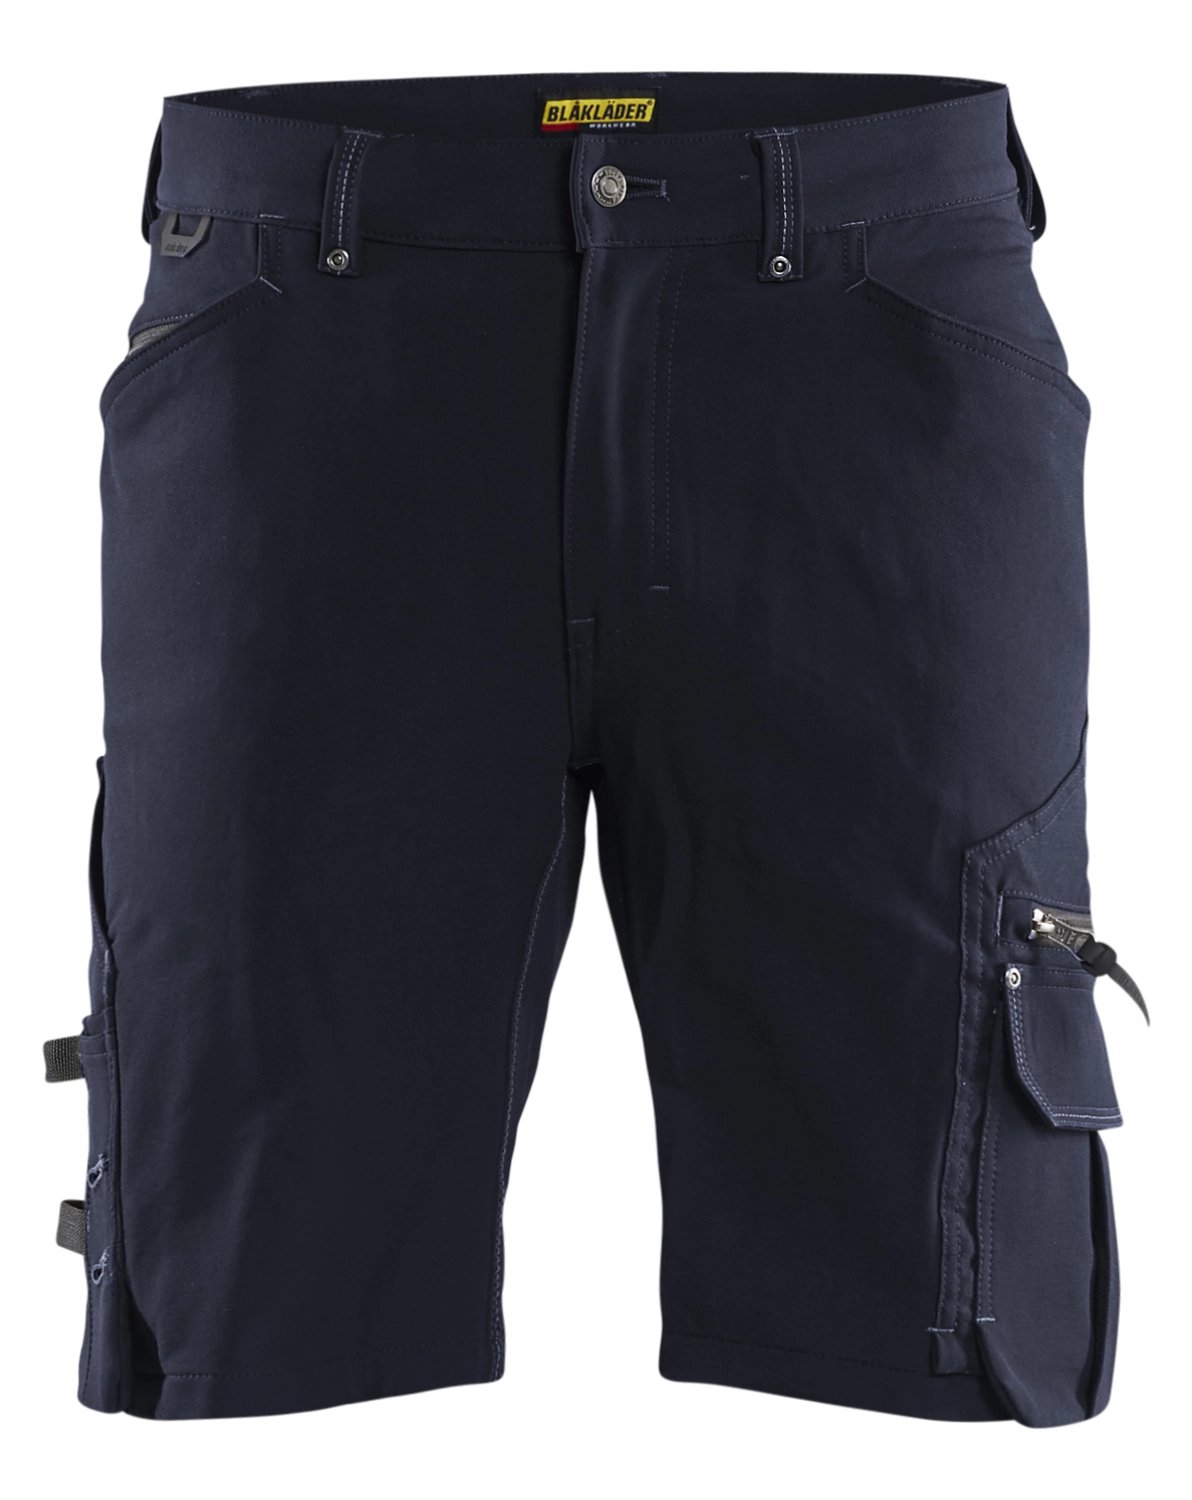 Blåkläder Short X1900 artisan stretch 4D sans poche flottante - C48 - Marine foncé/Noir-image